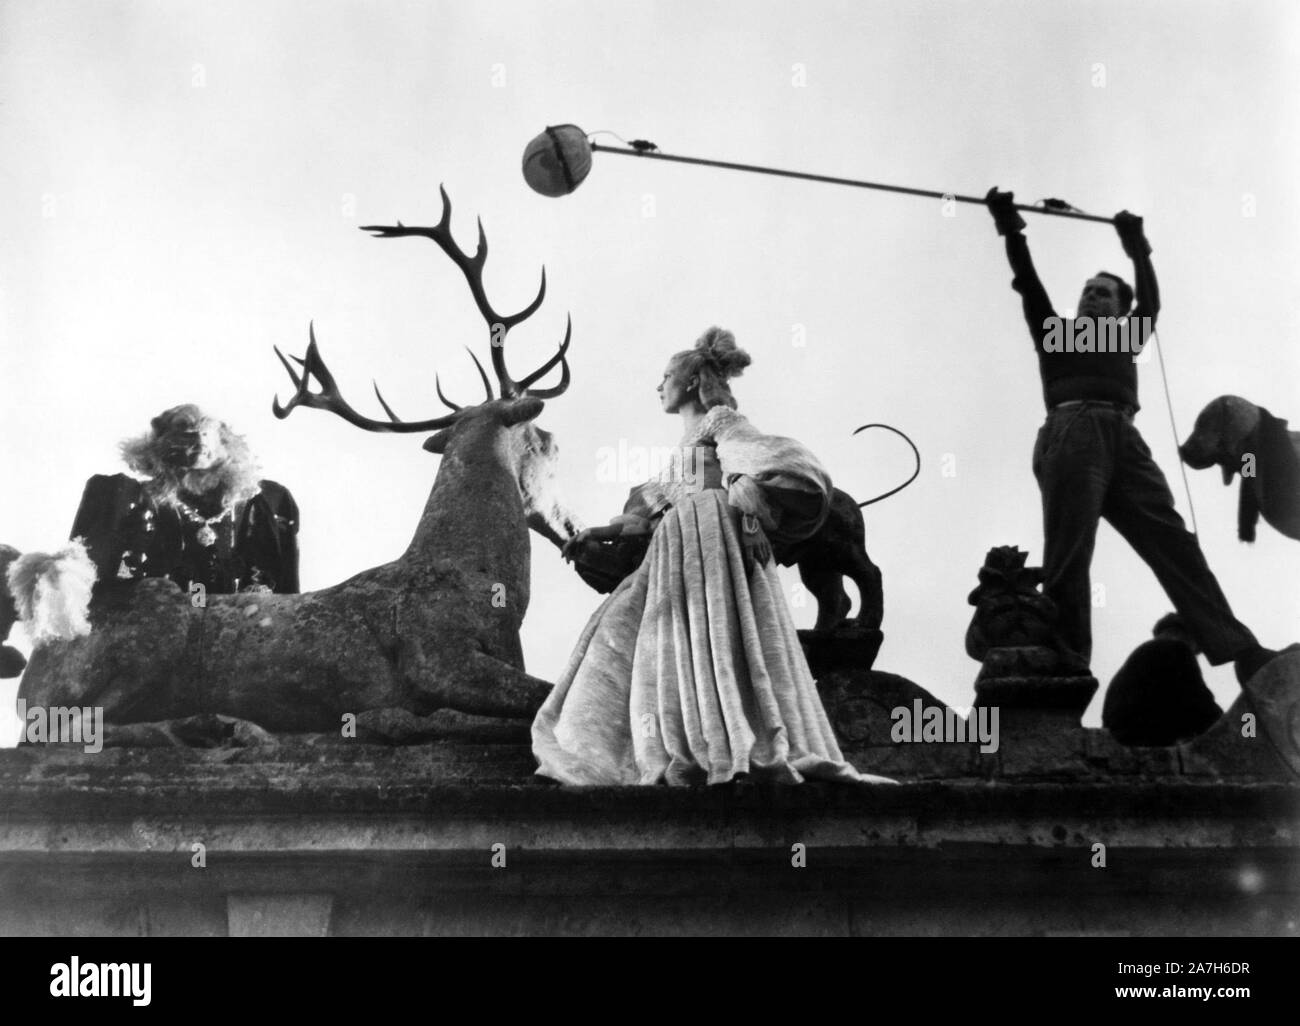 JOSETTE DAY and JEAN MARAIS in BEAUTY AND THE BEAST (1946) -Original title: LA BELLE ET LA BEÏTE-, directed by JEAN COCTEAU. Credit: FILMS ANDRE PAULVE / Album Stock Photo